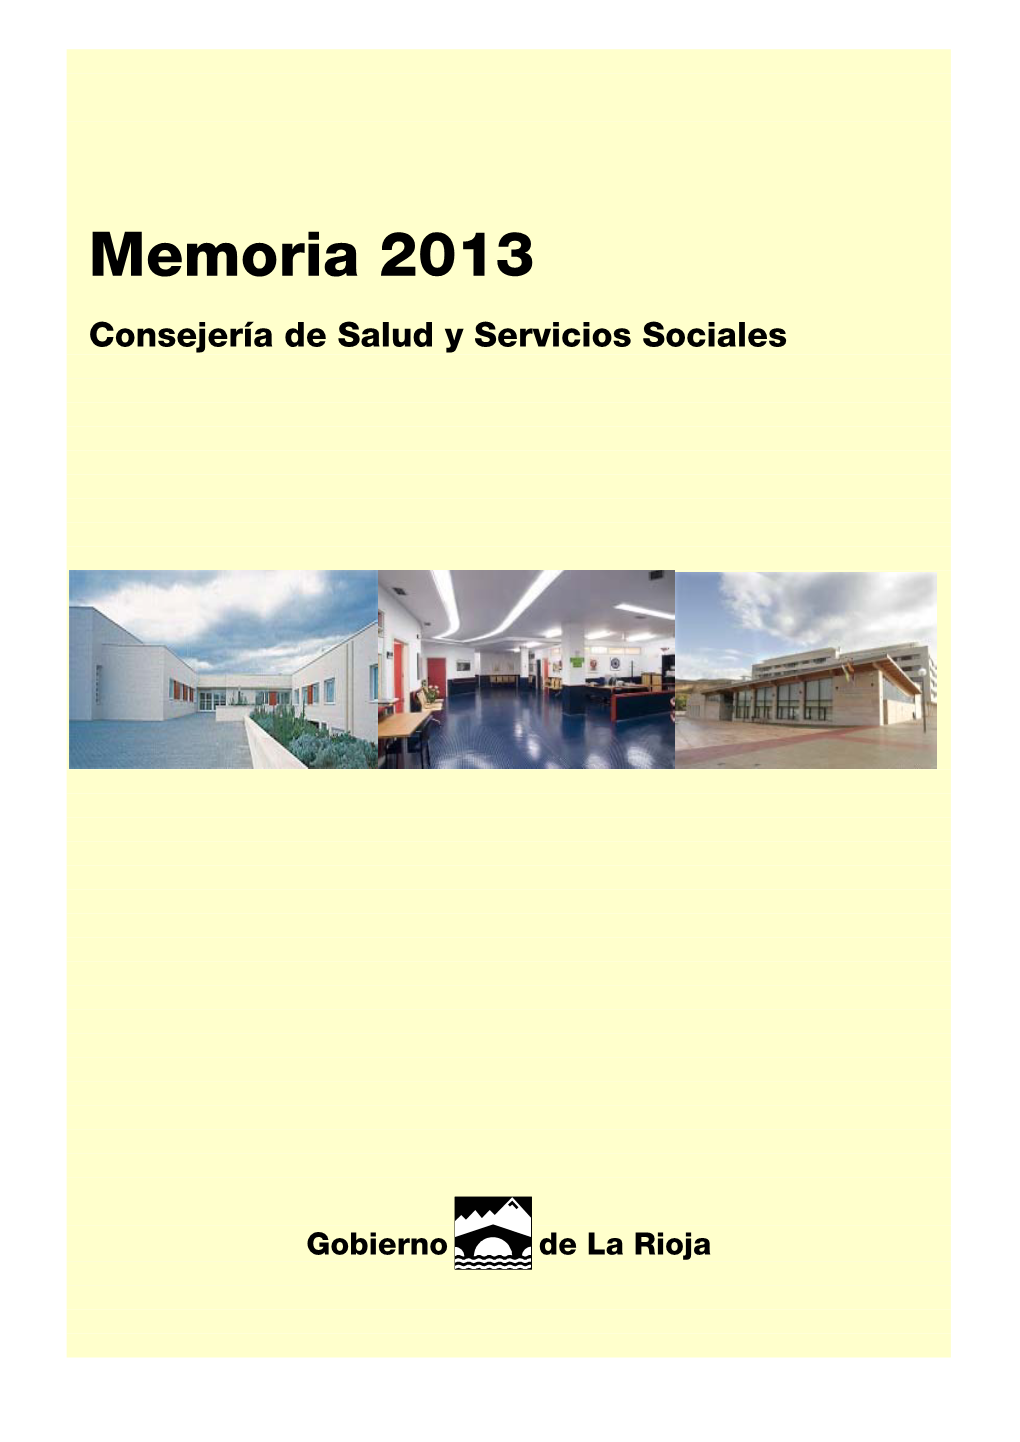 Memoria De La Consejería De Salud Y Servicios Sociales 2013